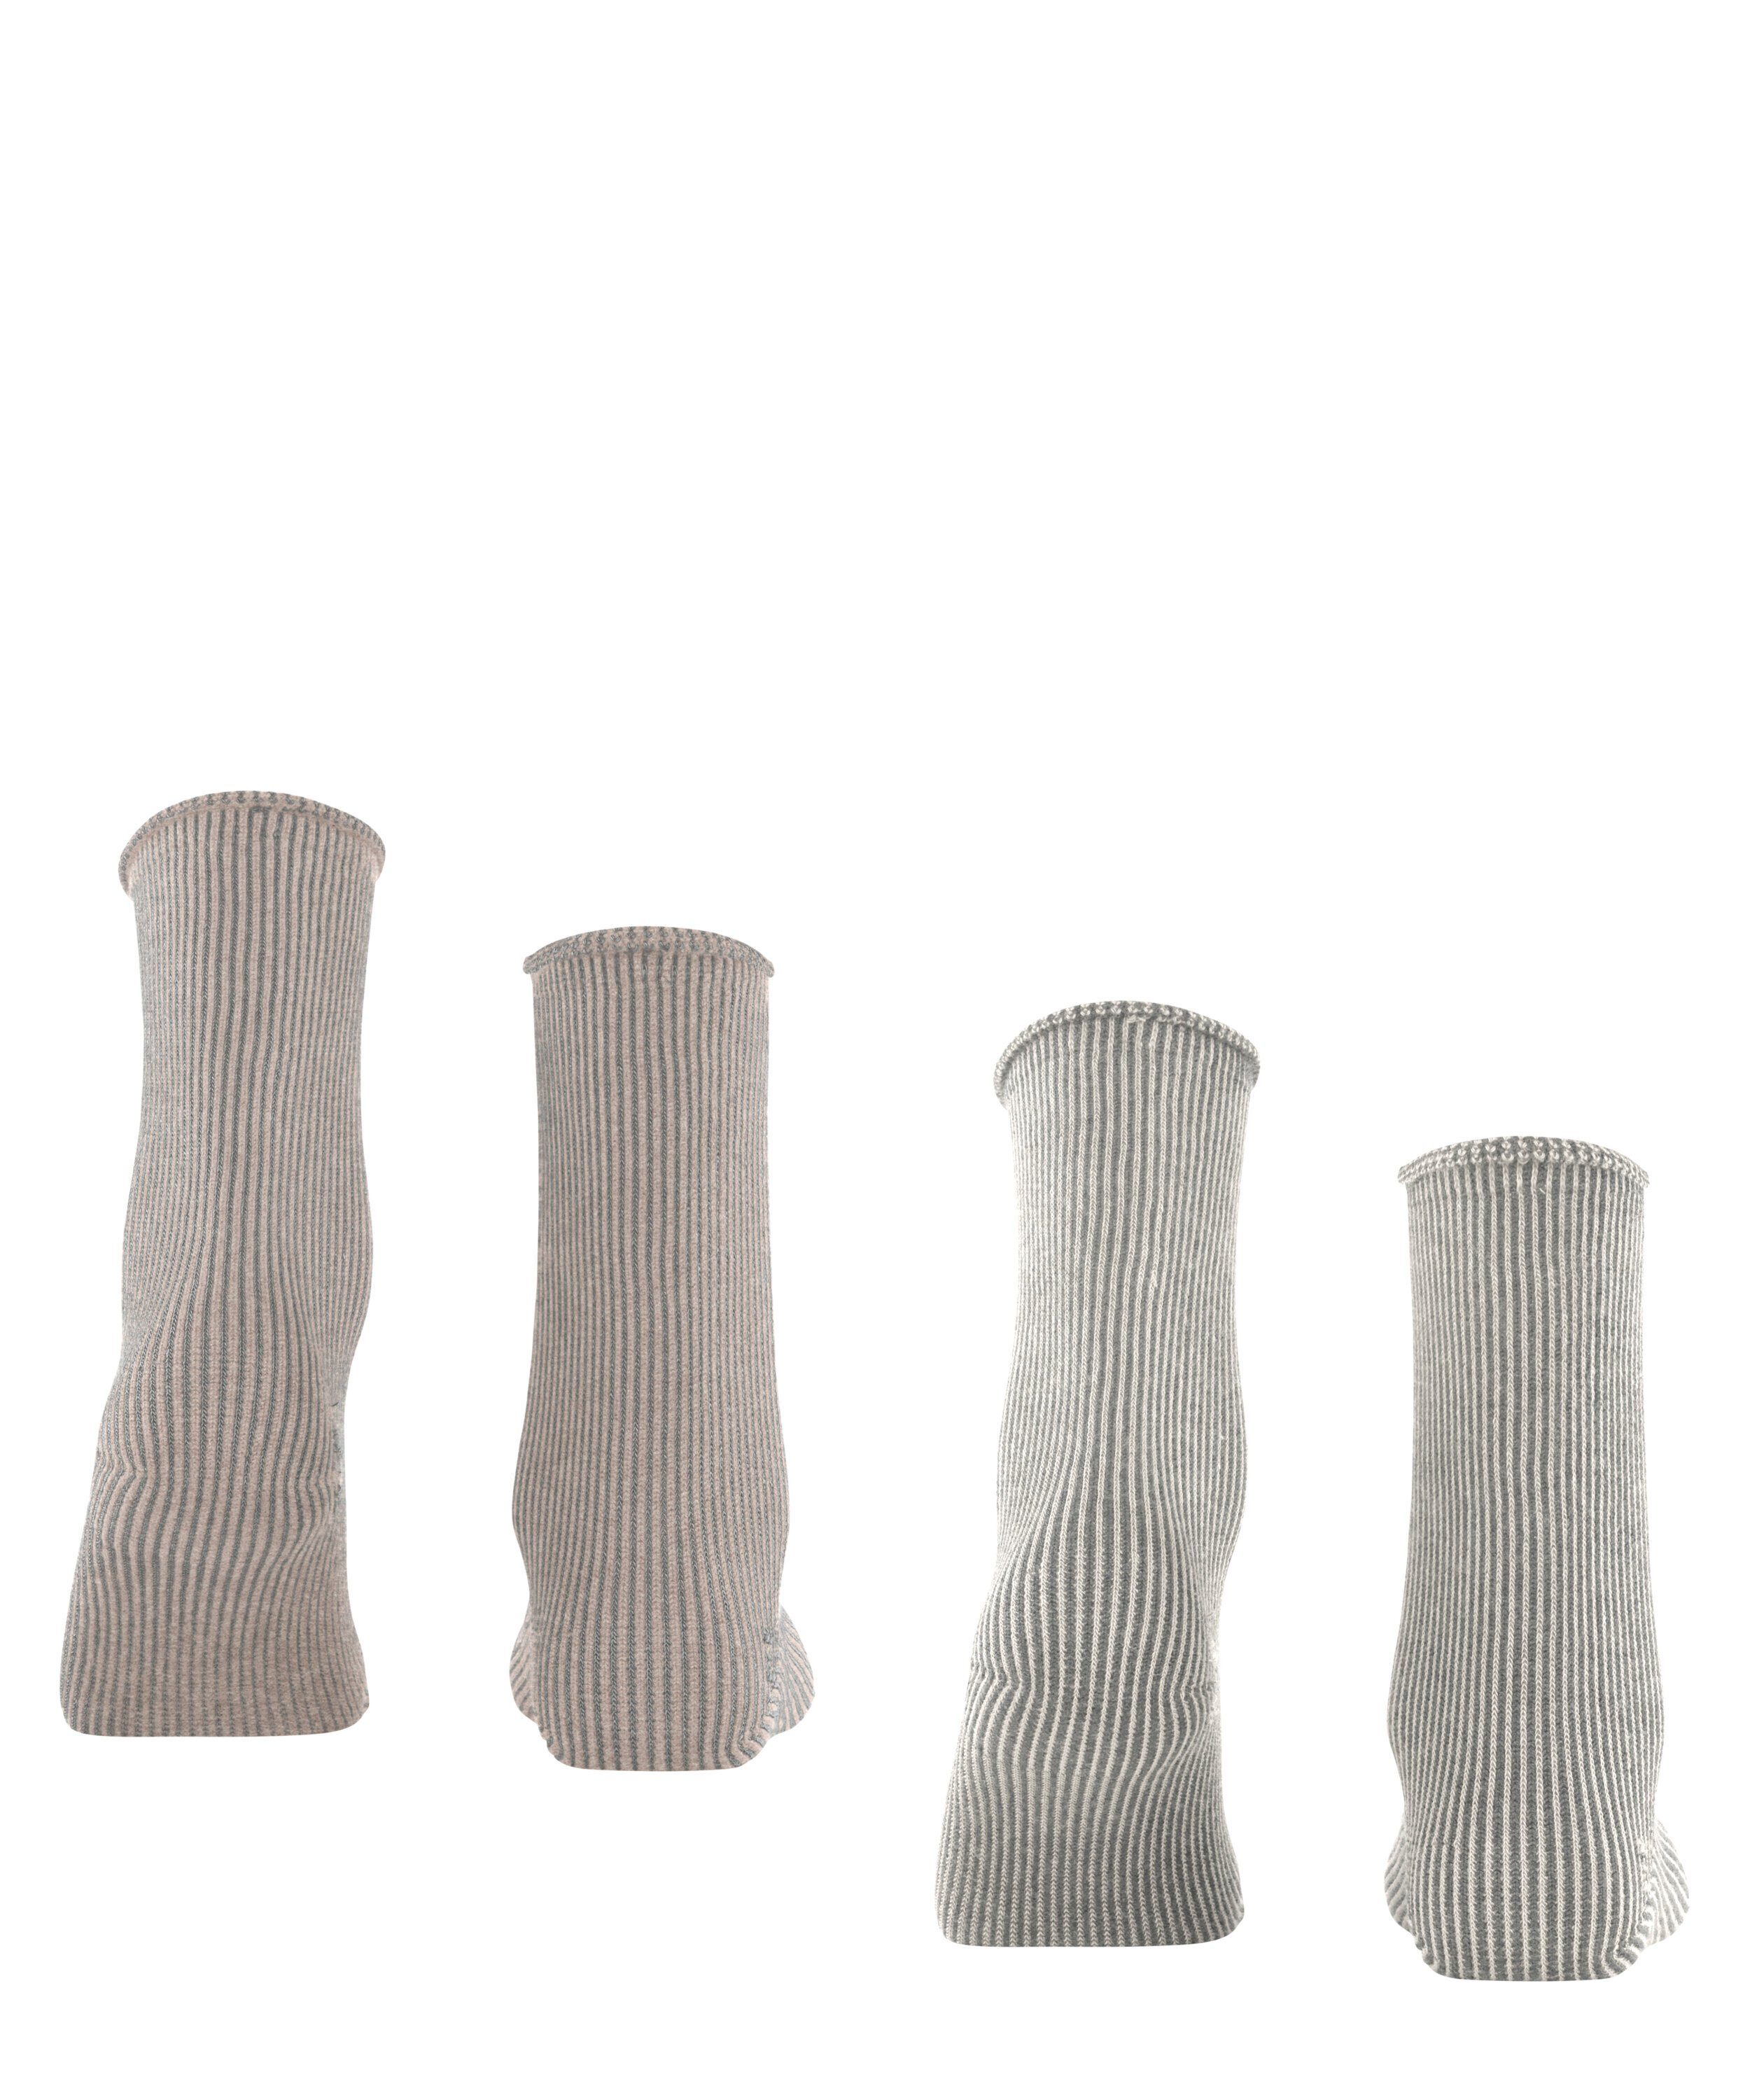 Esprit Socken Vertical Stripe 2-Pack (0030) sortiment (2-Paar)